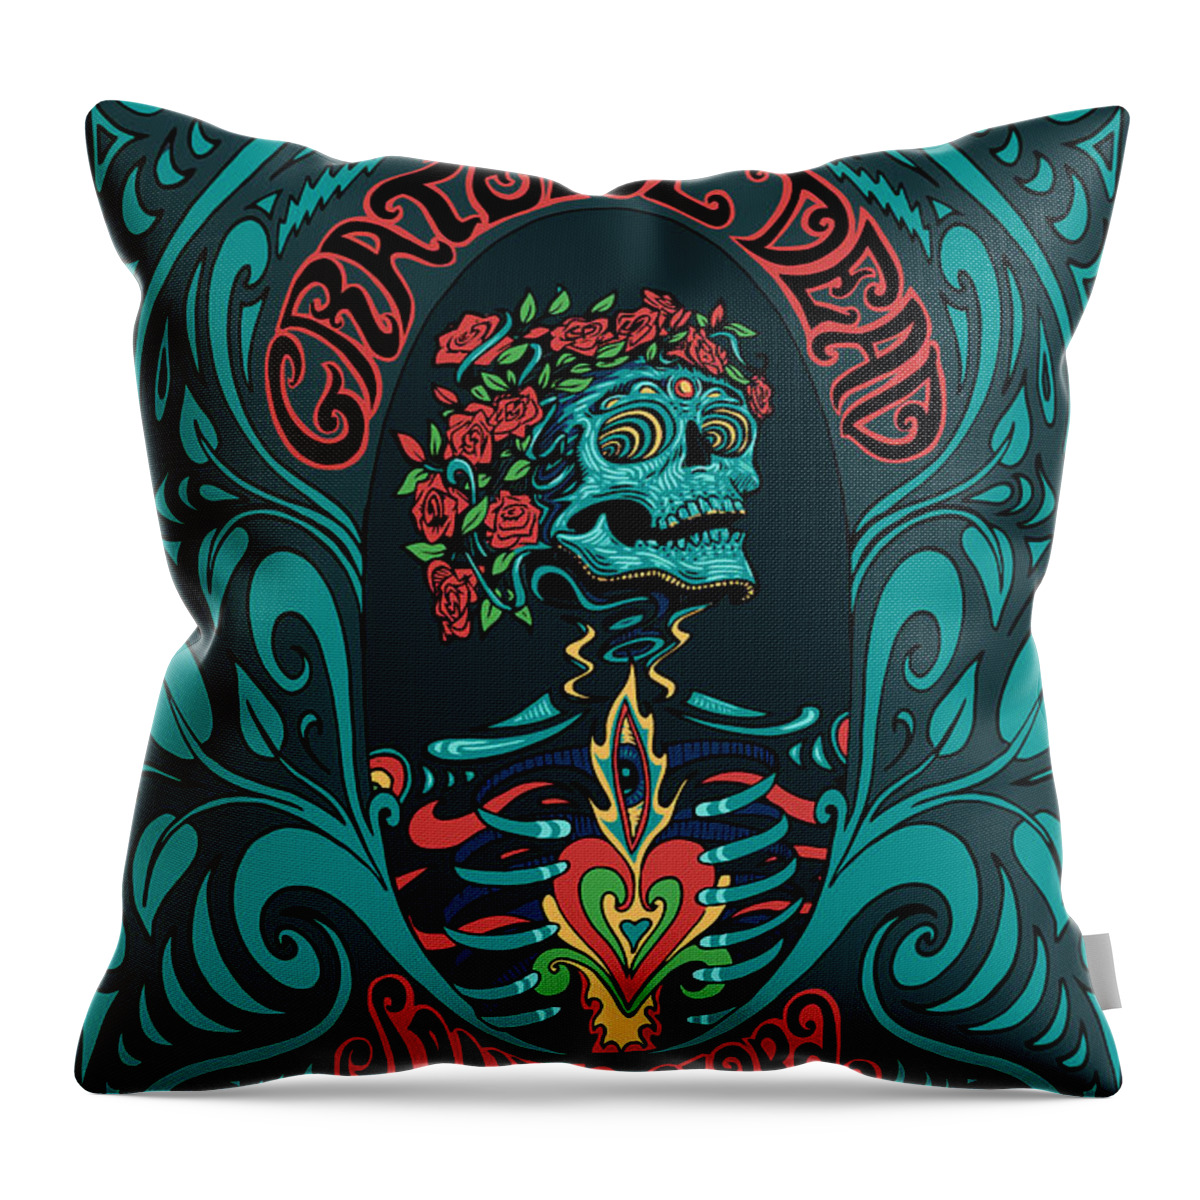 Grateful Dead Throw Pillow featuring the digital art Grateful Dead SANTA CLARA 2015 by Gd